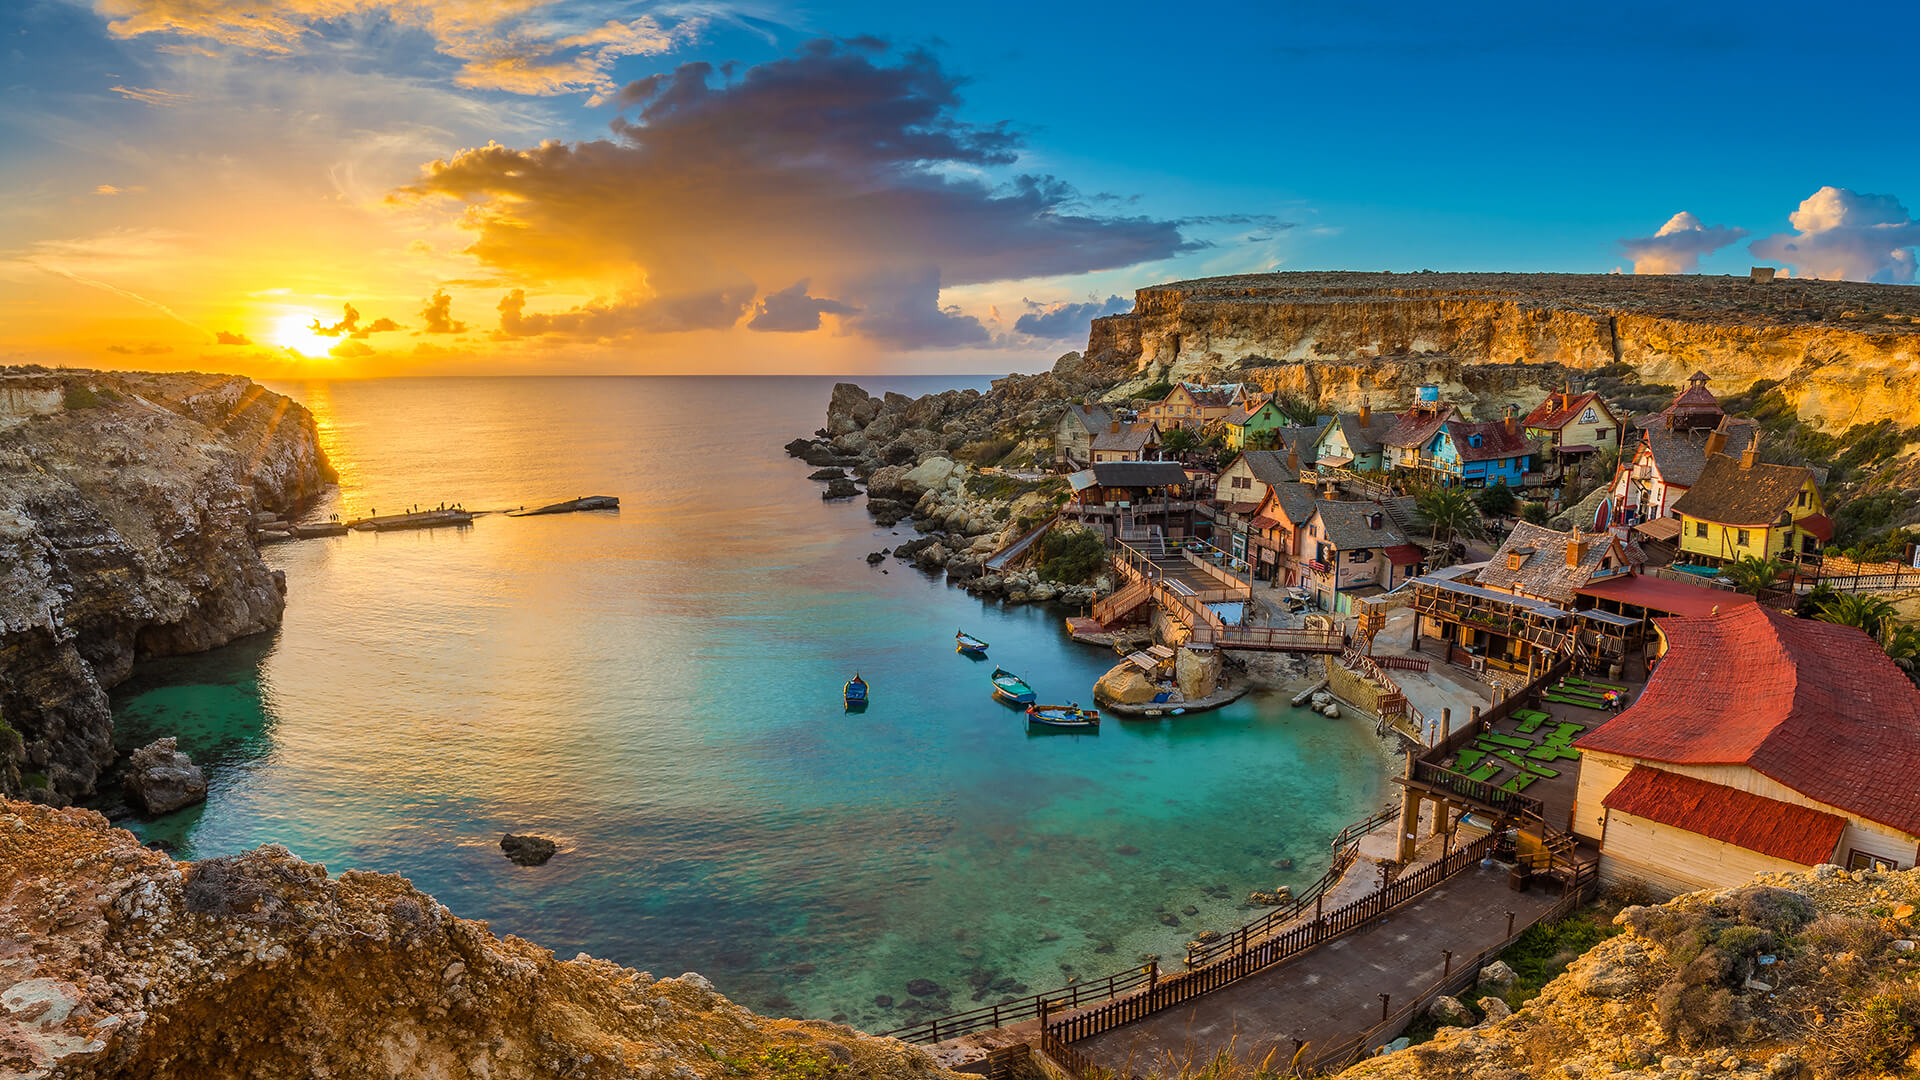 Ταξίδι στη Μάλτα αεροπορικώς - Ταξιδέψτε με την Prima Holidays